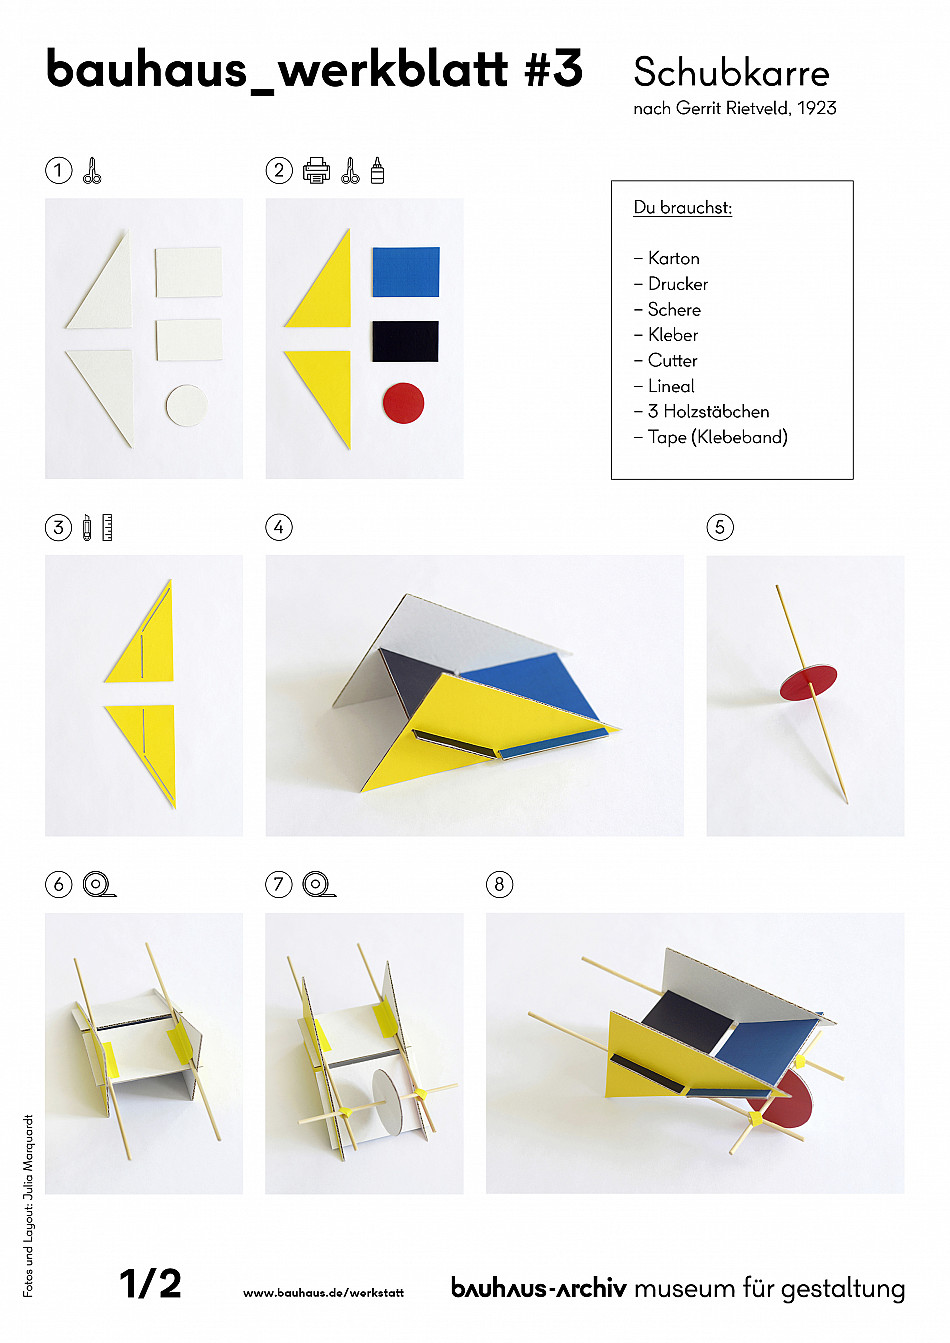 bauhaus_werkblatt mit Schritt-für-Schritt-Anleitung zum Bauen einer Schubkarre aus Pappe